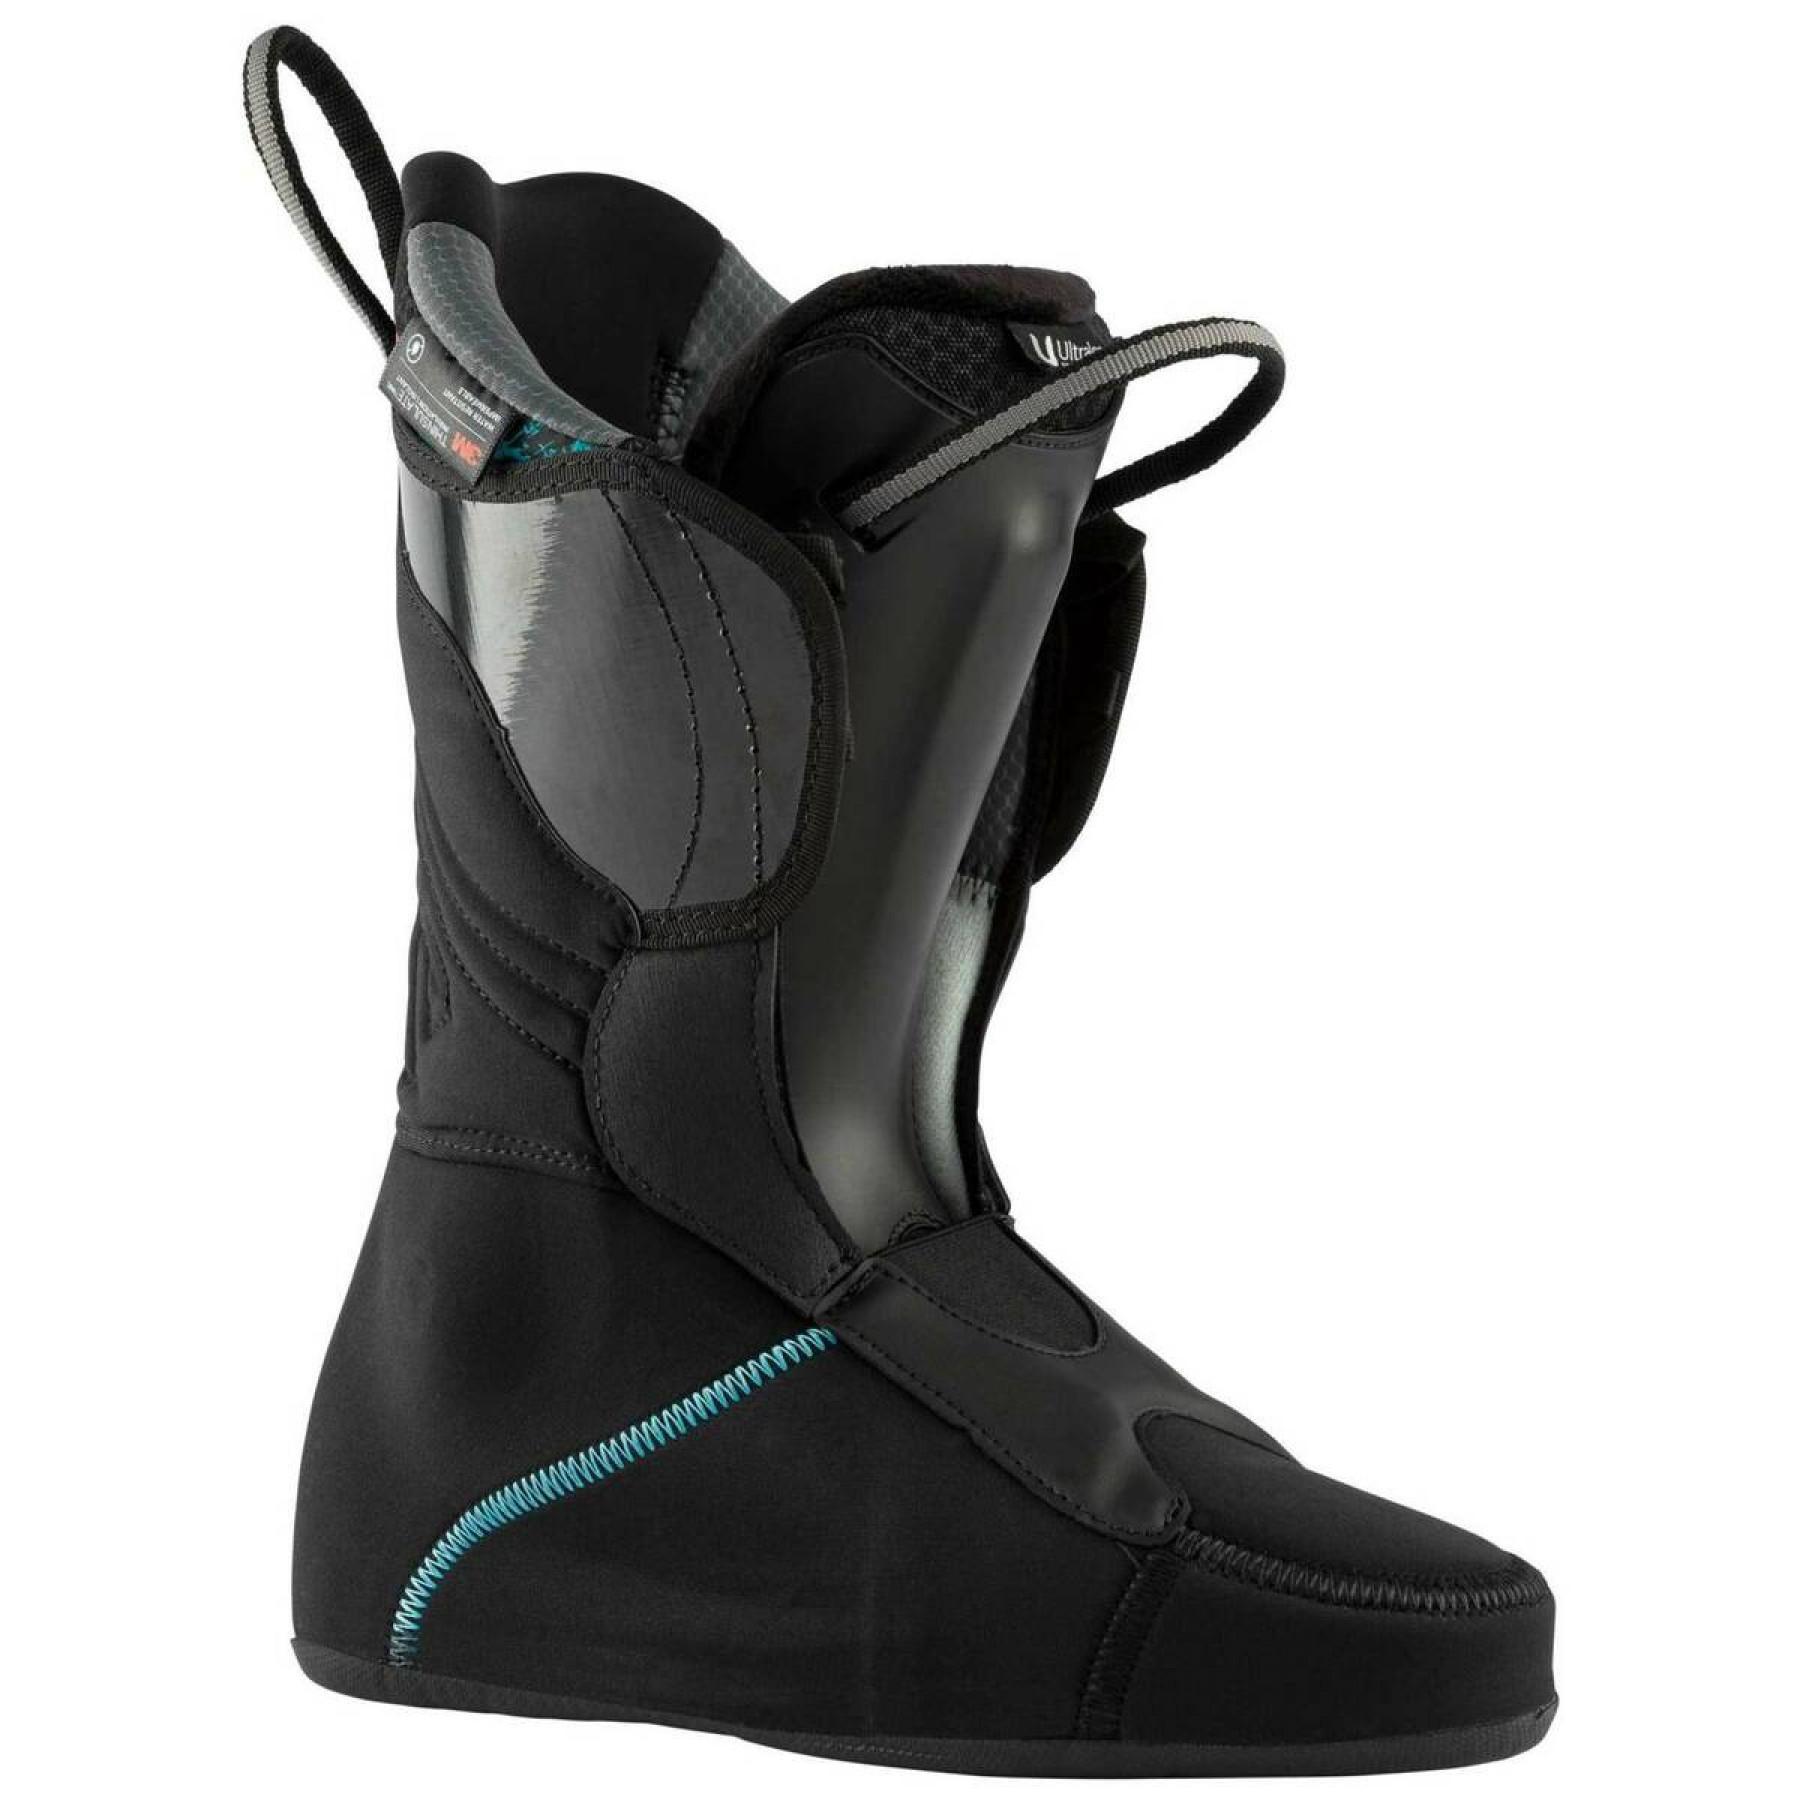 Women's ski boots Lange xt3 110gw